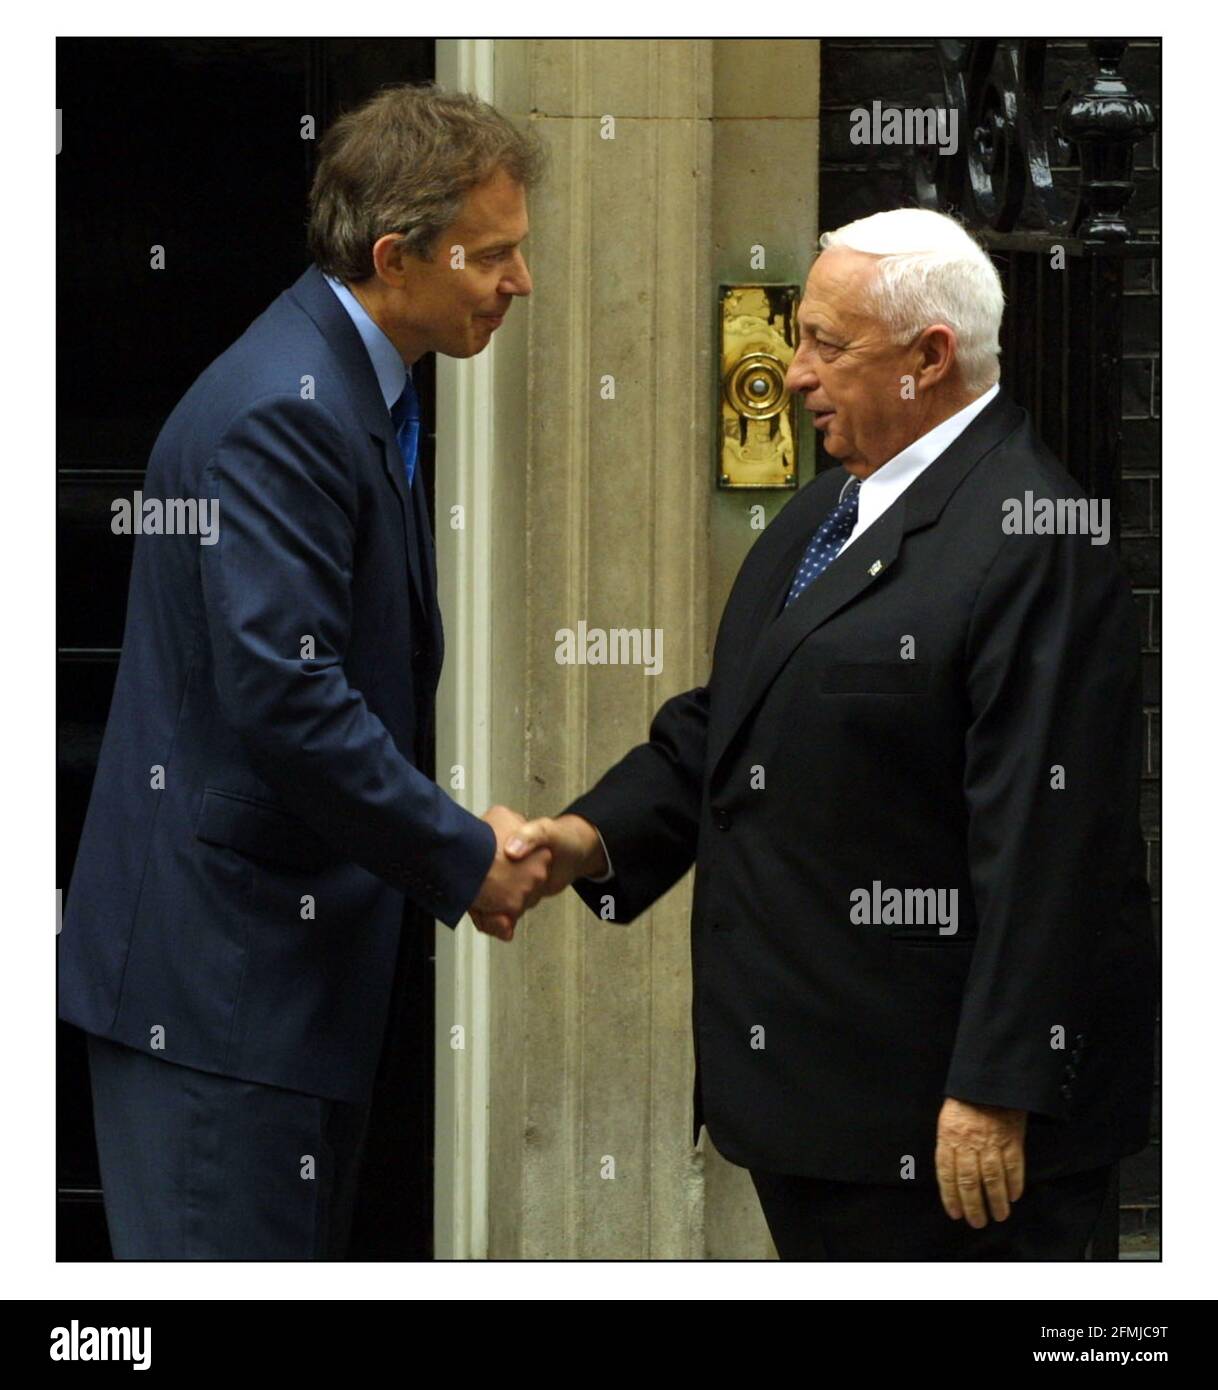 Tony Blair rencontre M. Sharon sur les pas de Downing St. pic David Sandison 12/6/2002 Banque D'Images